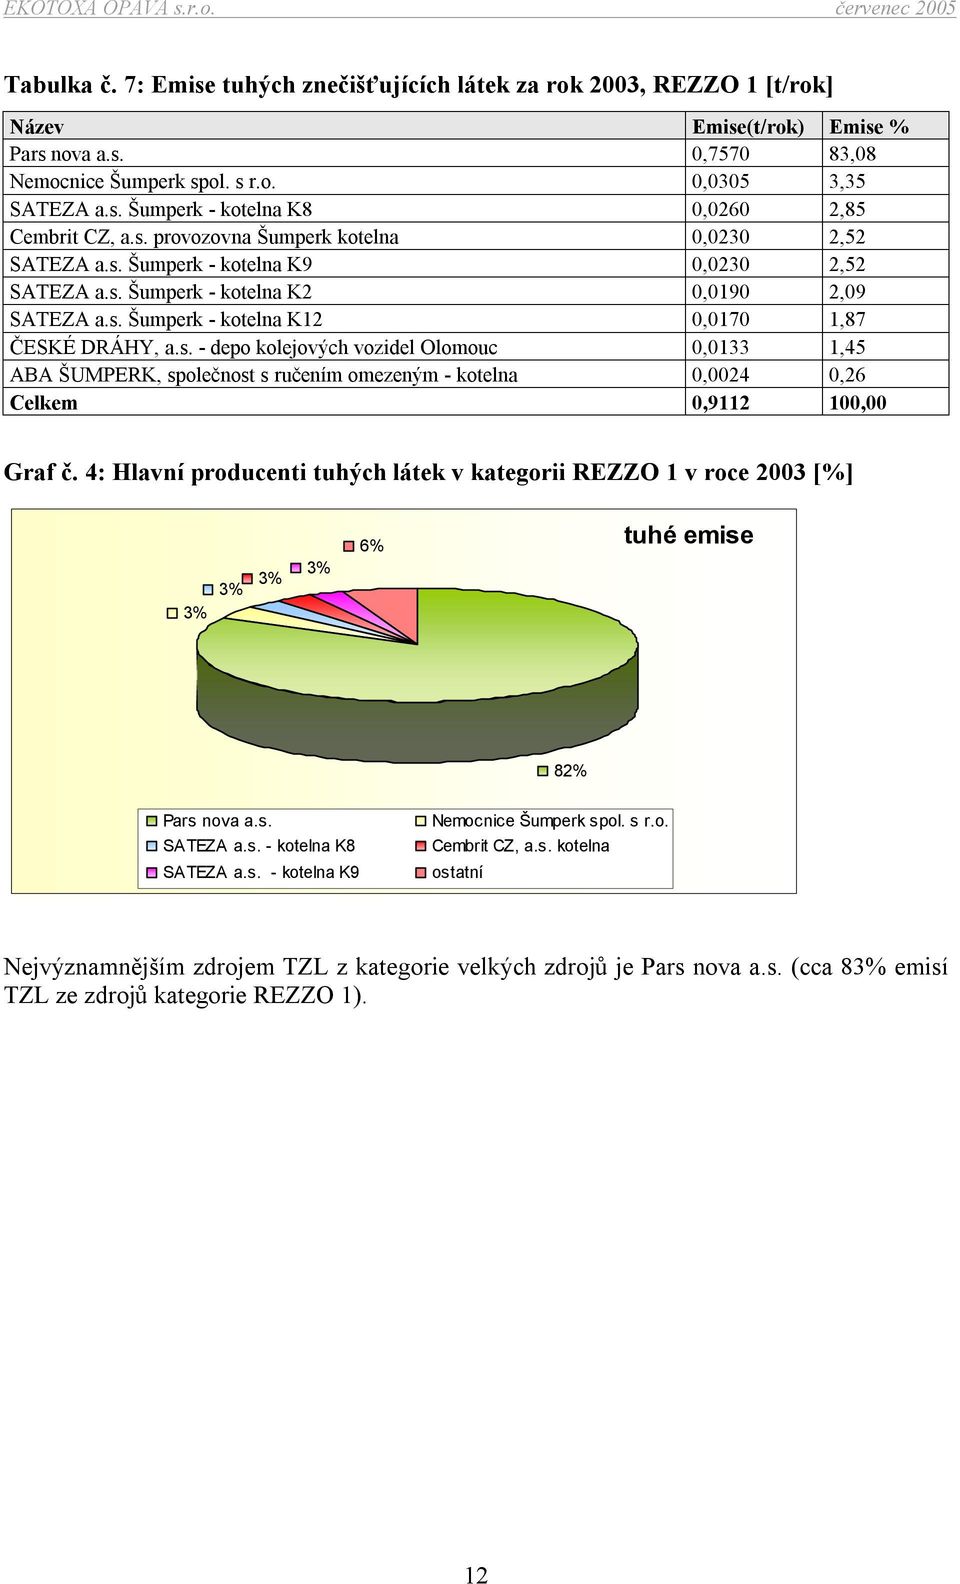 4: Hlavní producenti tuhých látek v kategorii REZZO 1 v roce 2003 [%] 3% 3% 3% 3% 6% tuhé emise 82% Pars nova a.s. SATEZA a.s. - kotelna K8 SATEZA a.s. - kotelna K9 Nemocnice Šumperk spol. s r.o. Cembrit CZ, a.